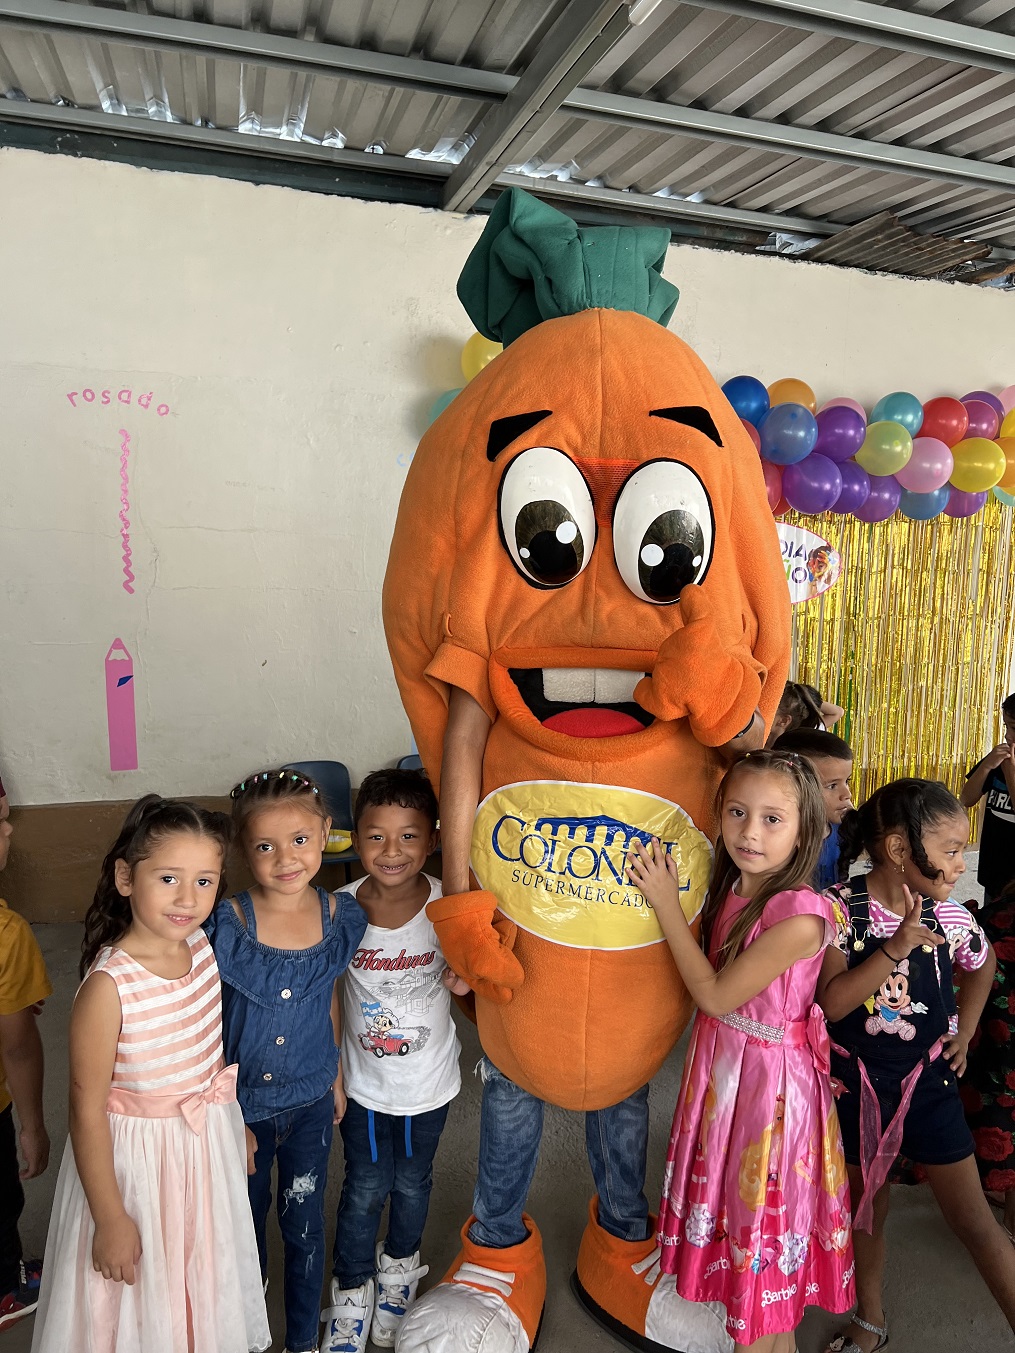 Supermercados Colonial lleva alegría a niños del Kinder Graciela H. Buezo de Rio Blanco